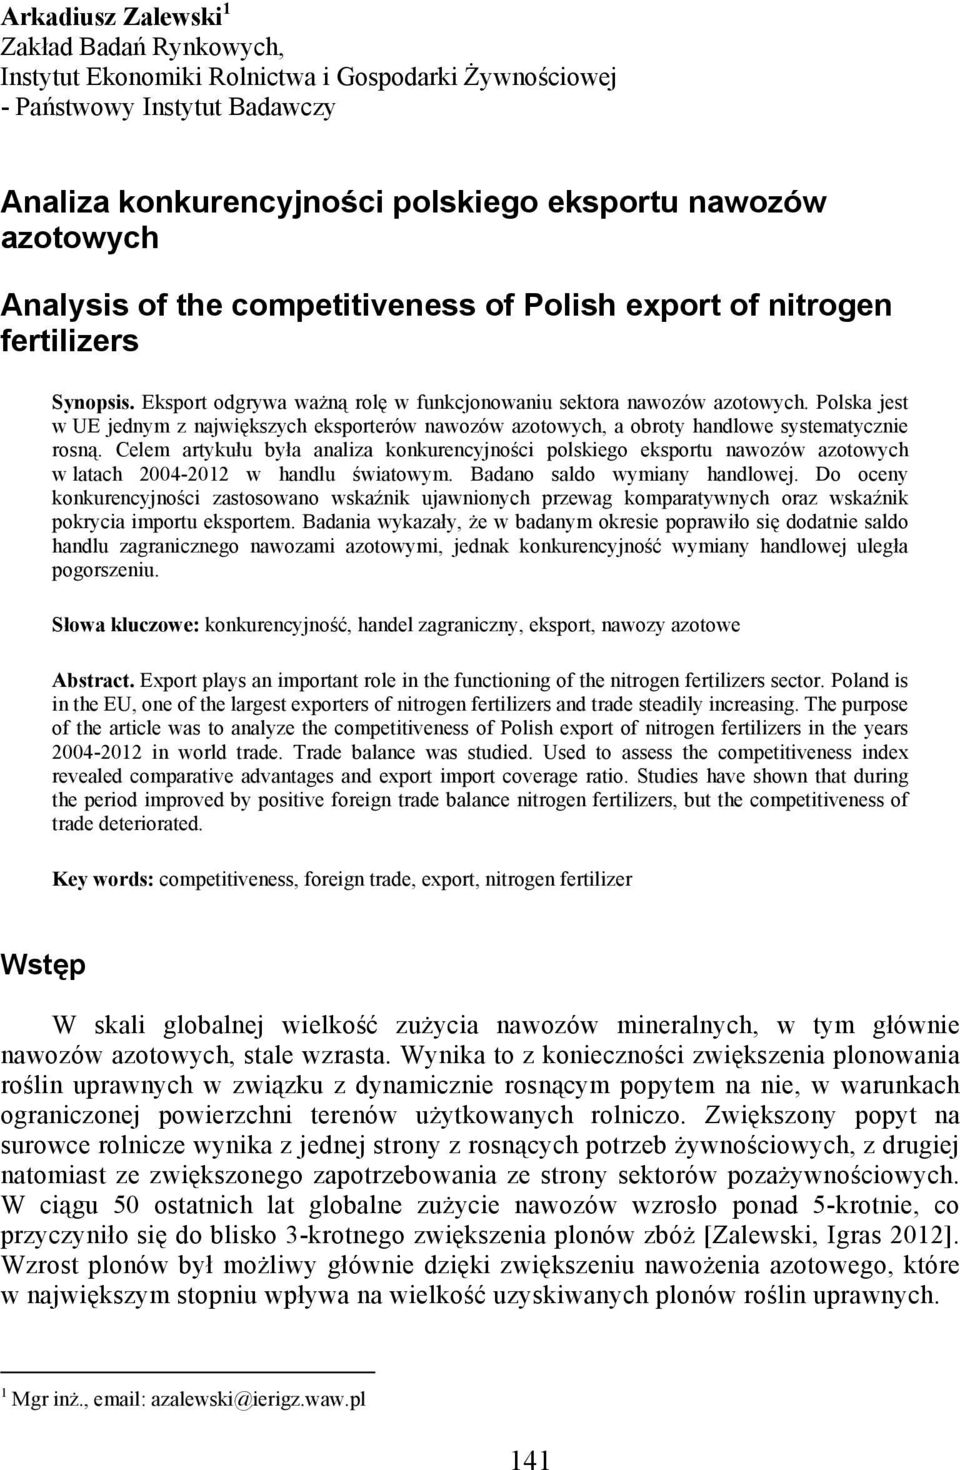 Polska jest w UE jednym z największych eksporterów nawozów azotowych, a obroty handlowe systematycznie rosną.